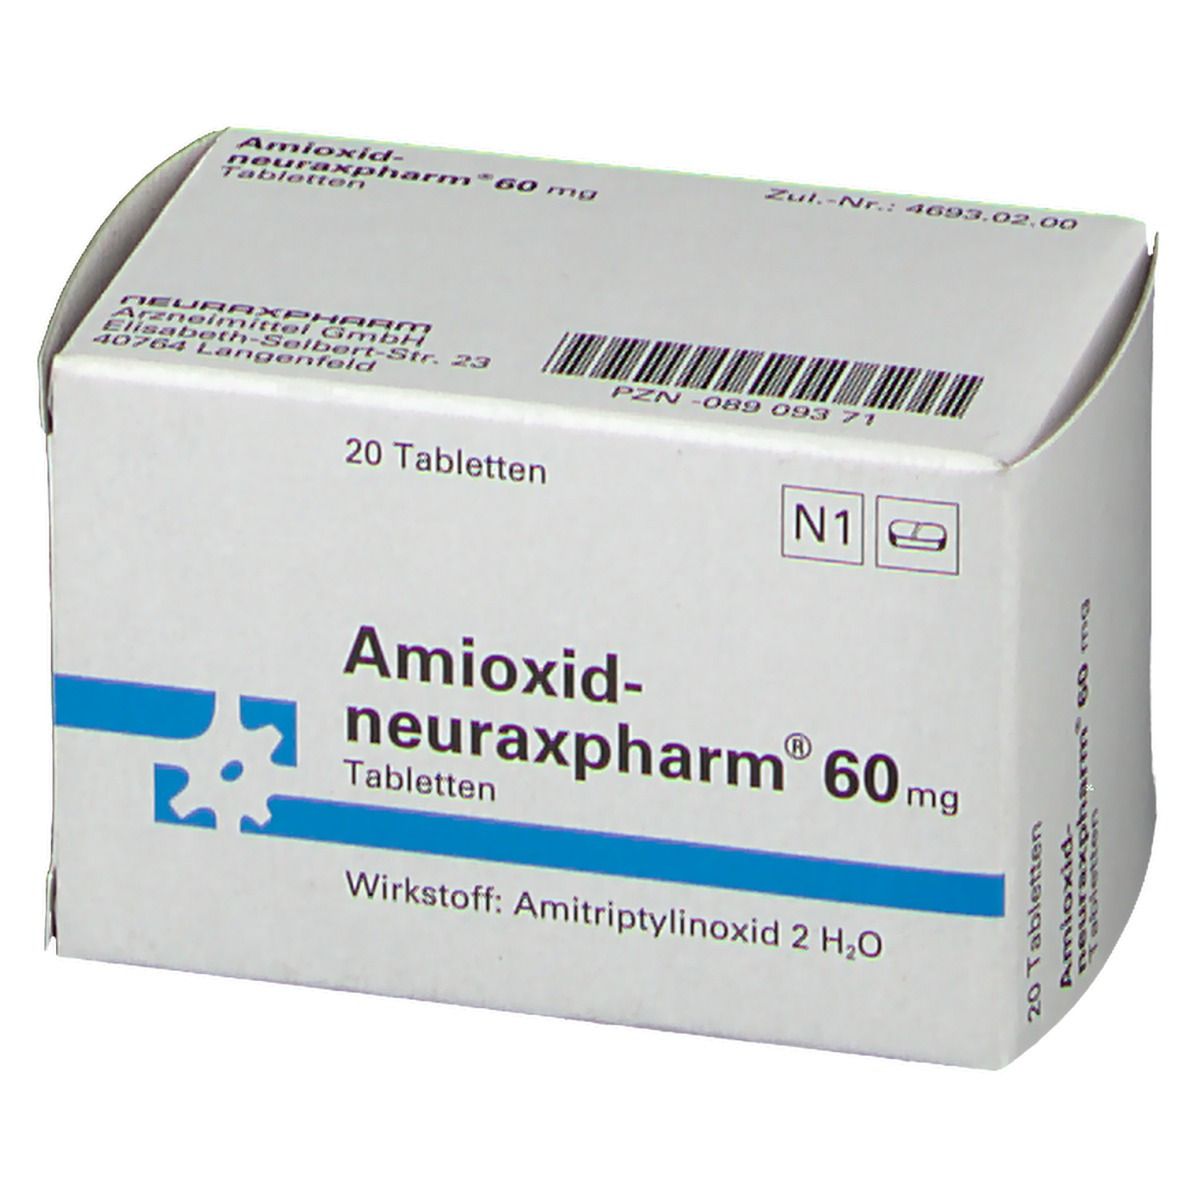 Amioxid-neuraxpharm® 60 mg